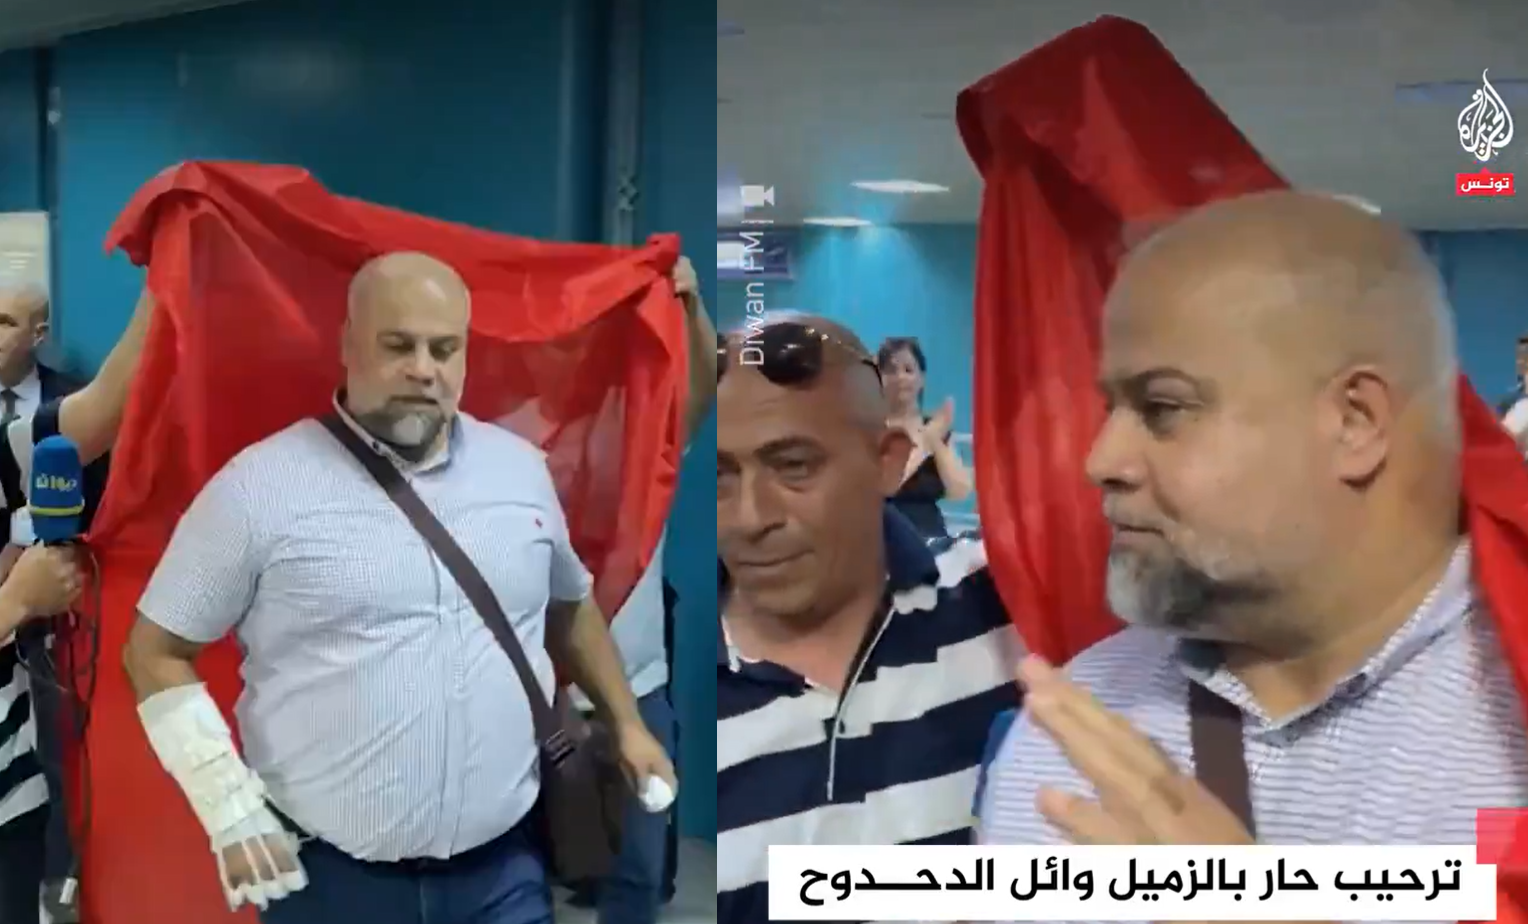 تونس.. استقبال مهيب لوائل الدحدوح بينما مكتب الجزيرة هناك مغلق بأمر قيس سعيد